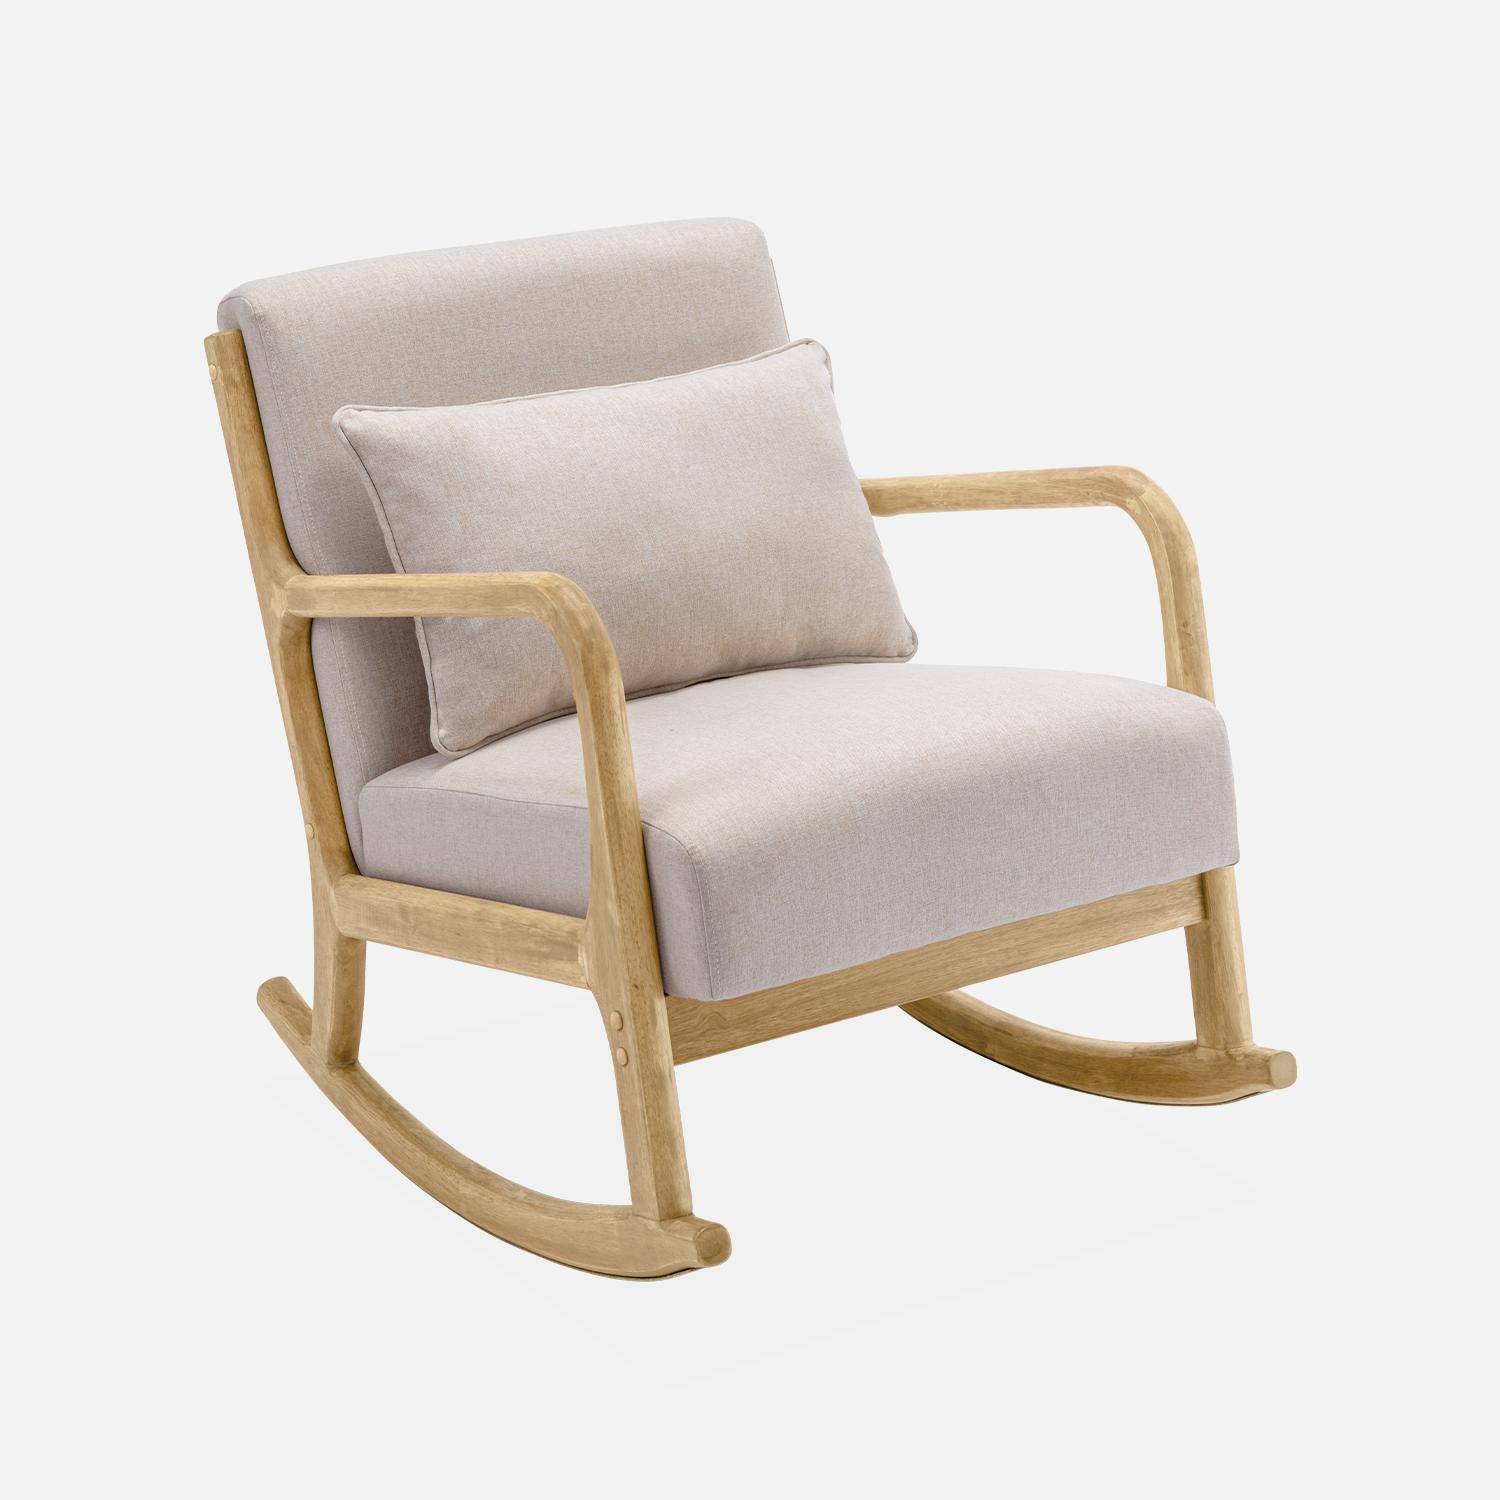 Cadeira de baloiço de design em madeira e tecido, 1 lugar, cadeira de baloiço escandinava, bege,sweeek,Photo3